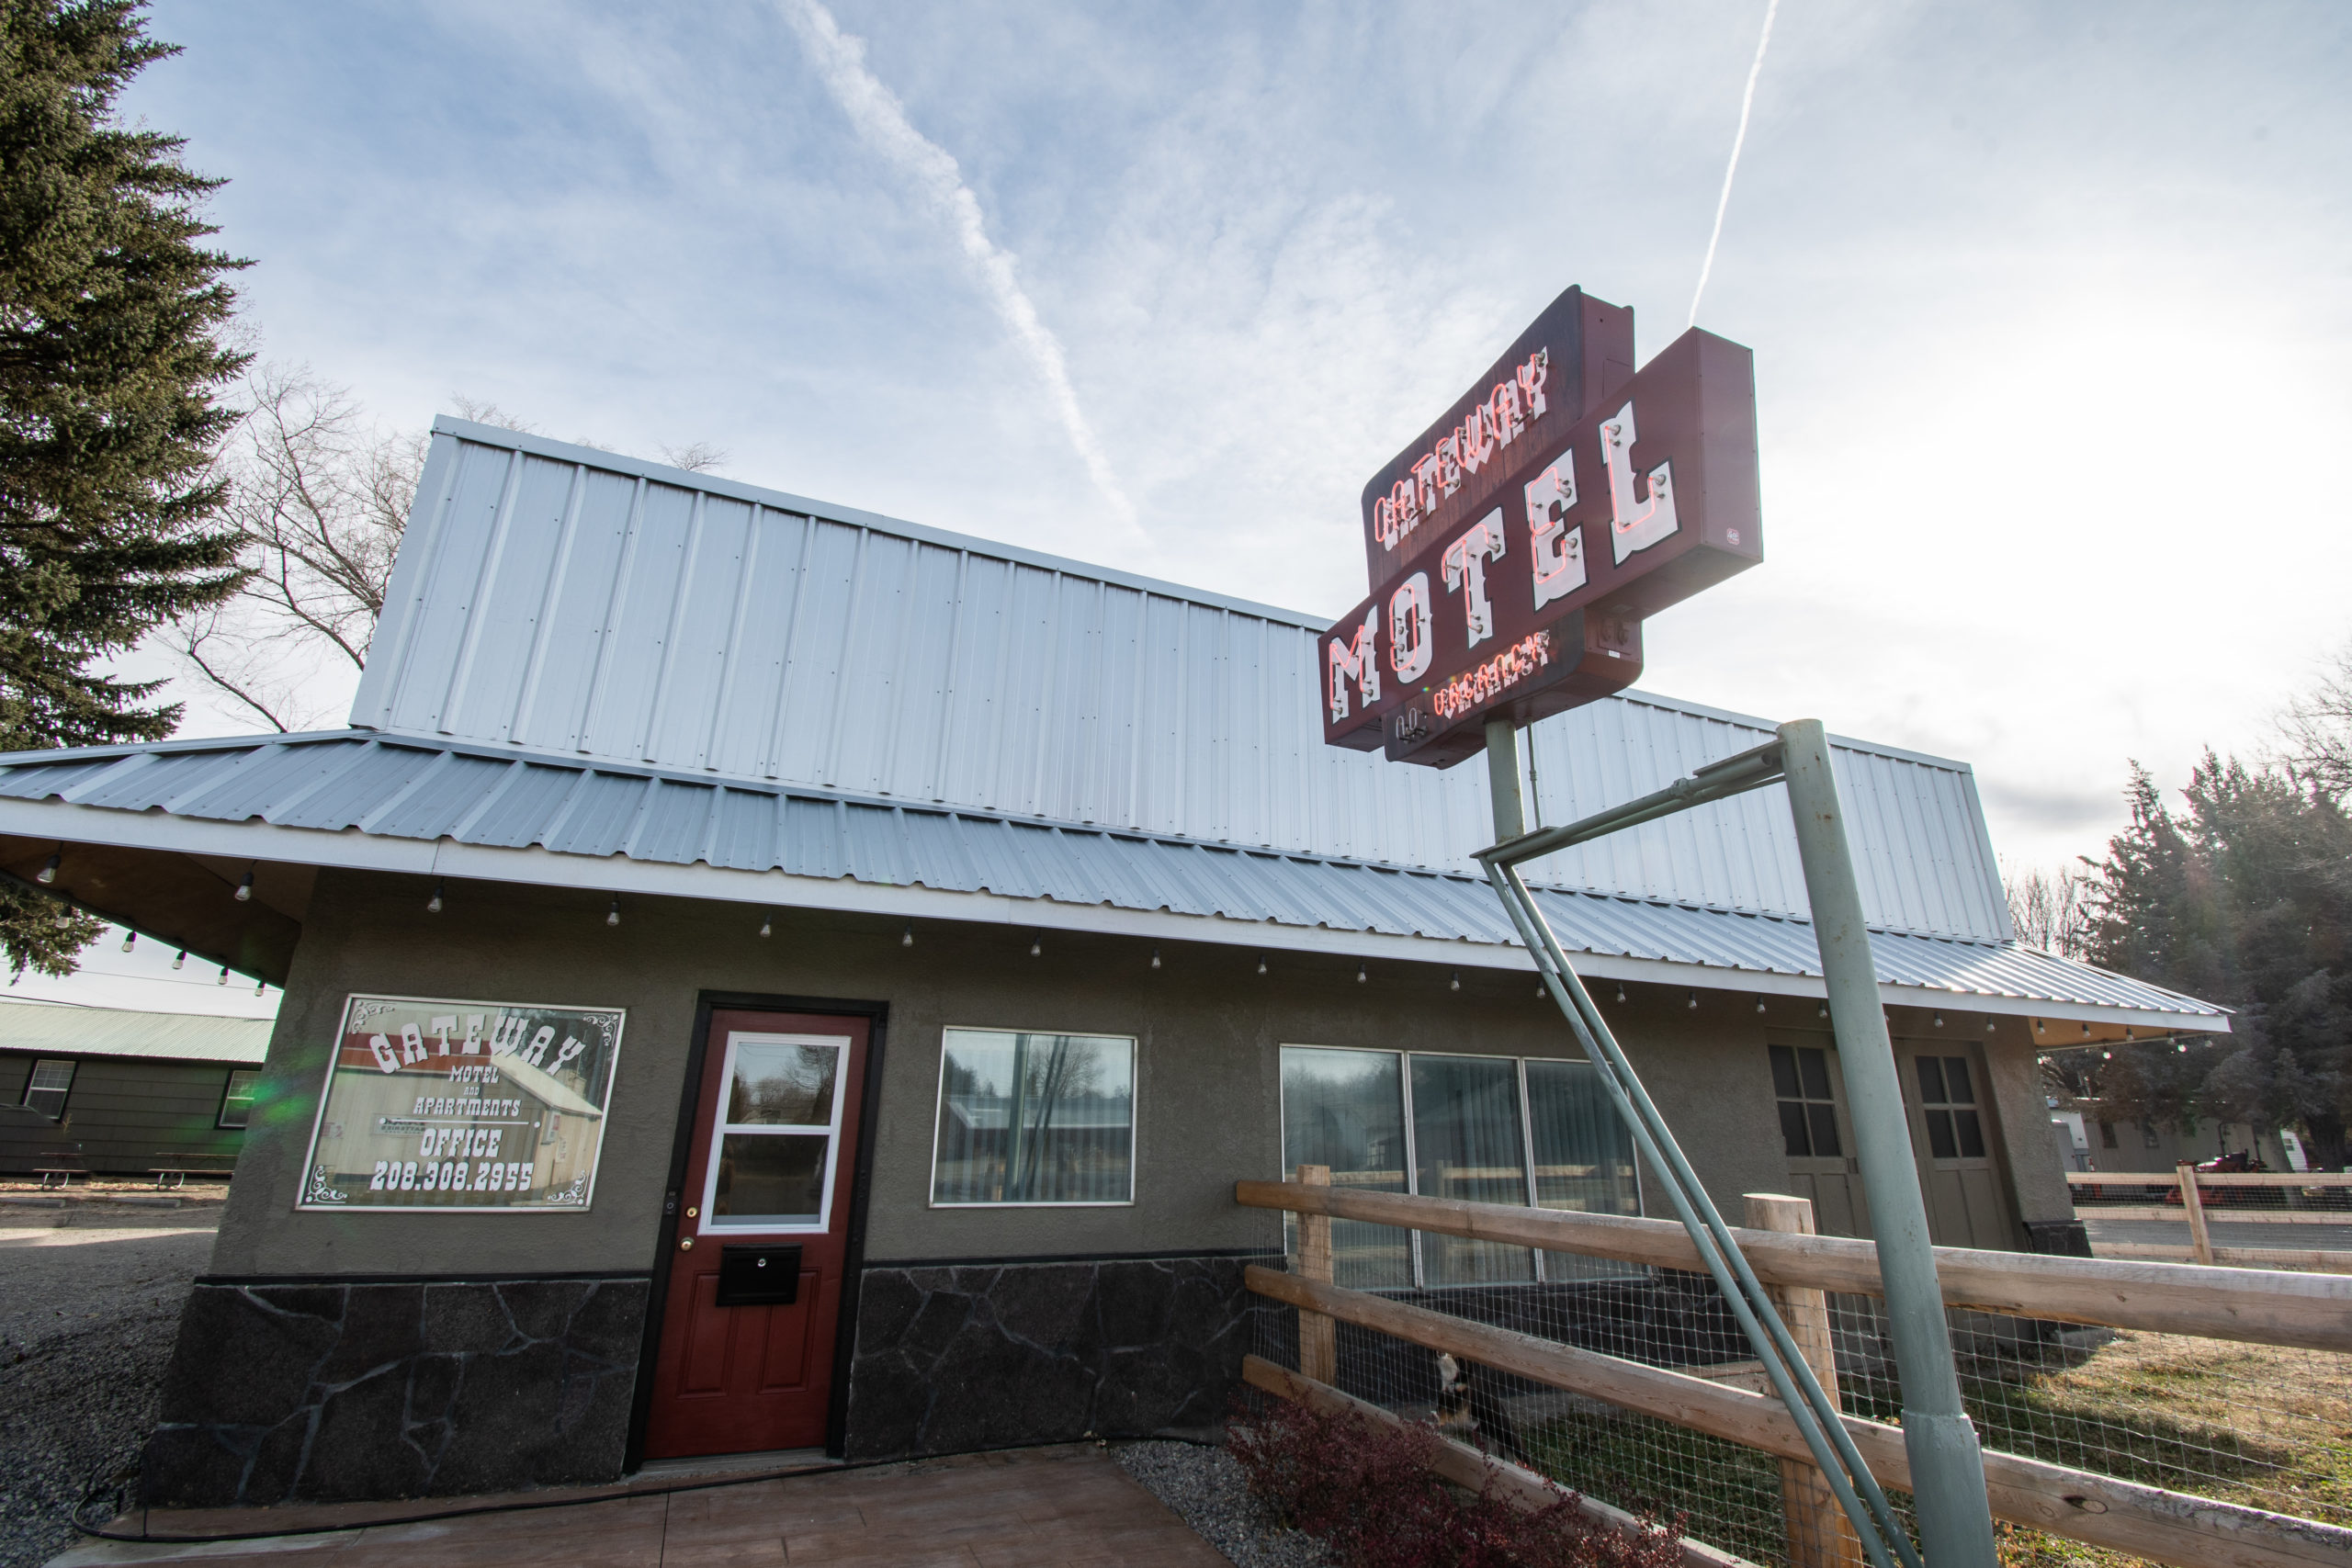 Gateway Motel, Shoshone Idaho, HWY 93